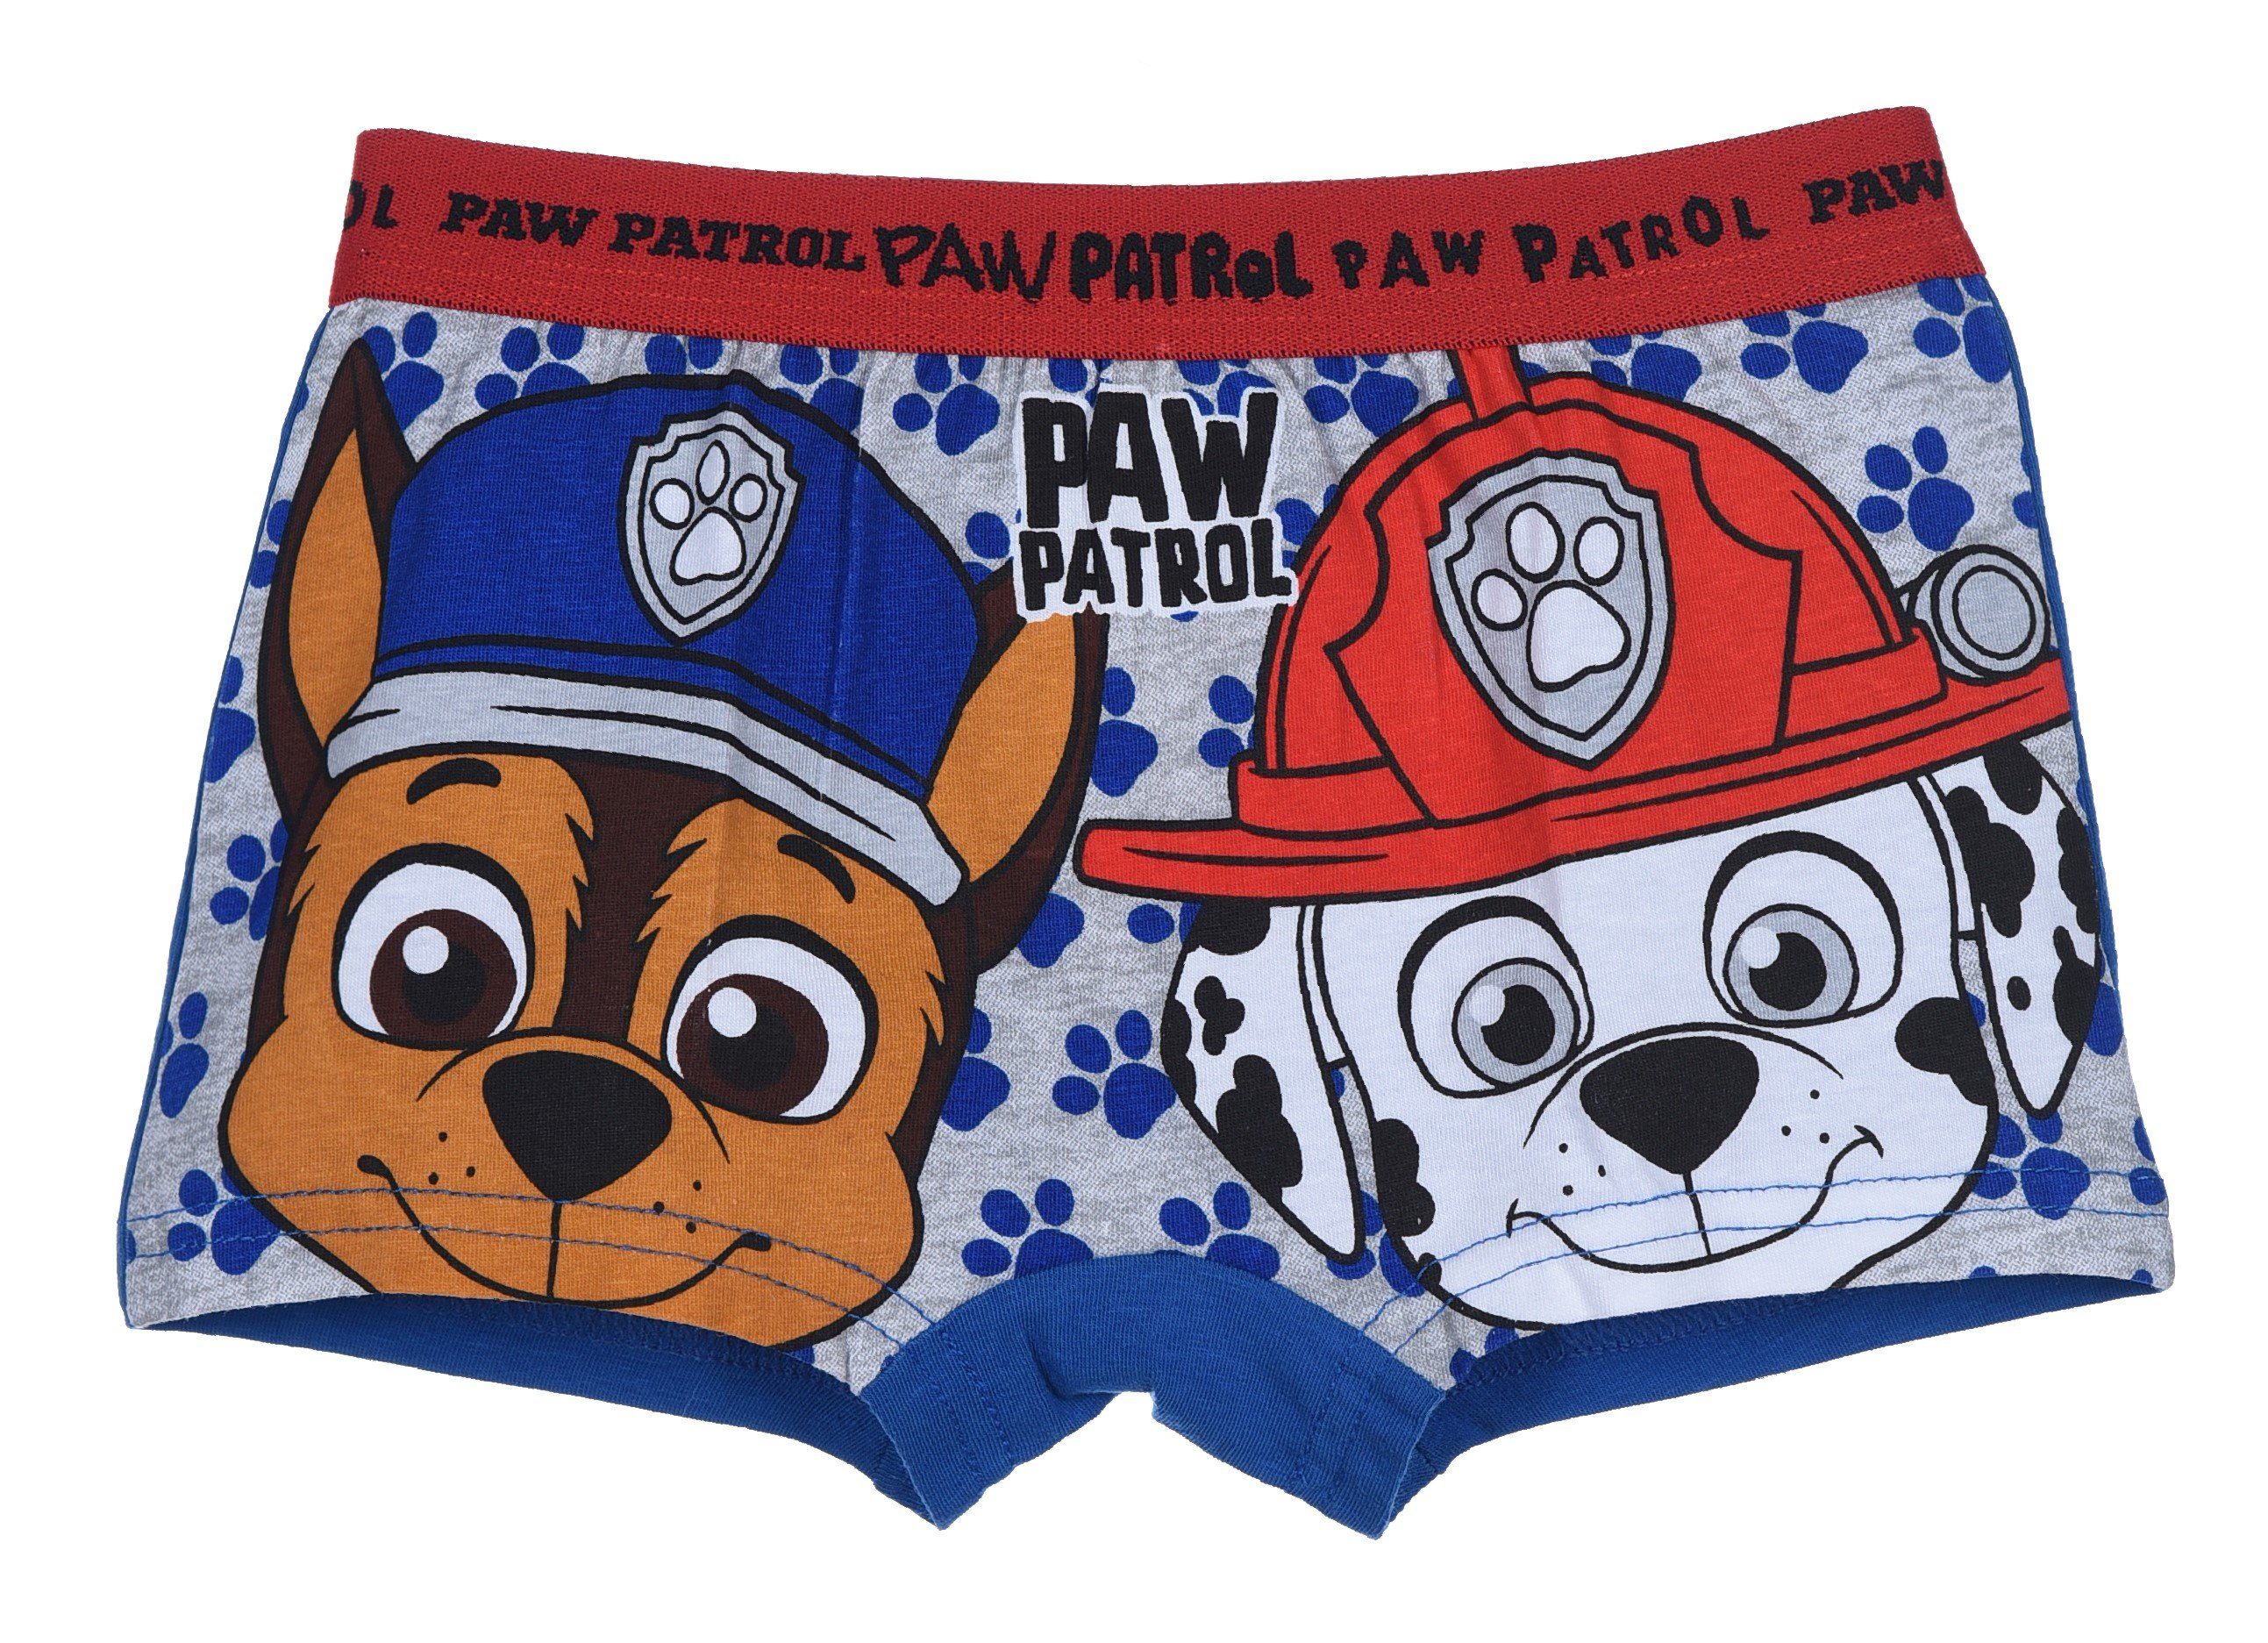 4 PAW Paw Patrol PATROL Pack er Boxershorts Jungen Boxershorts